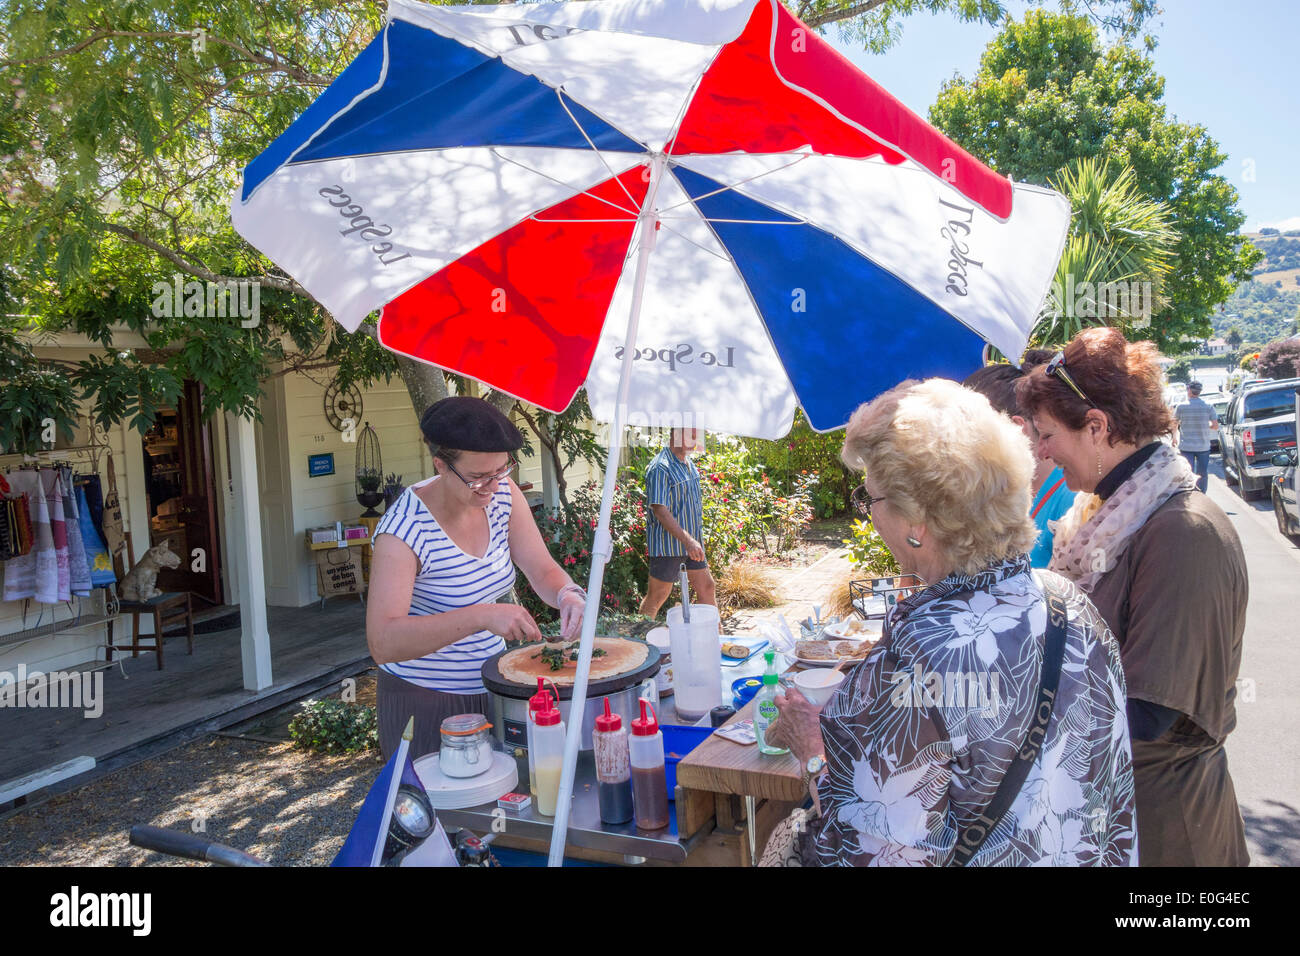 Akaroa Neuseeland - Les Crêpes d'Elise machen, französische Crêpes Pfannkuchen Passagiere von einem Lebensmittel Karren im französischen Shop La Folie Jolie Kreuzfahrt zu verkaufen Stockfoto